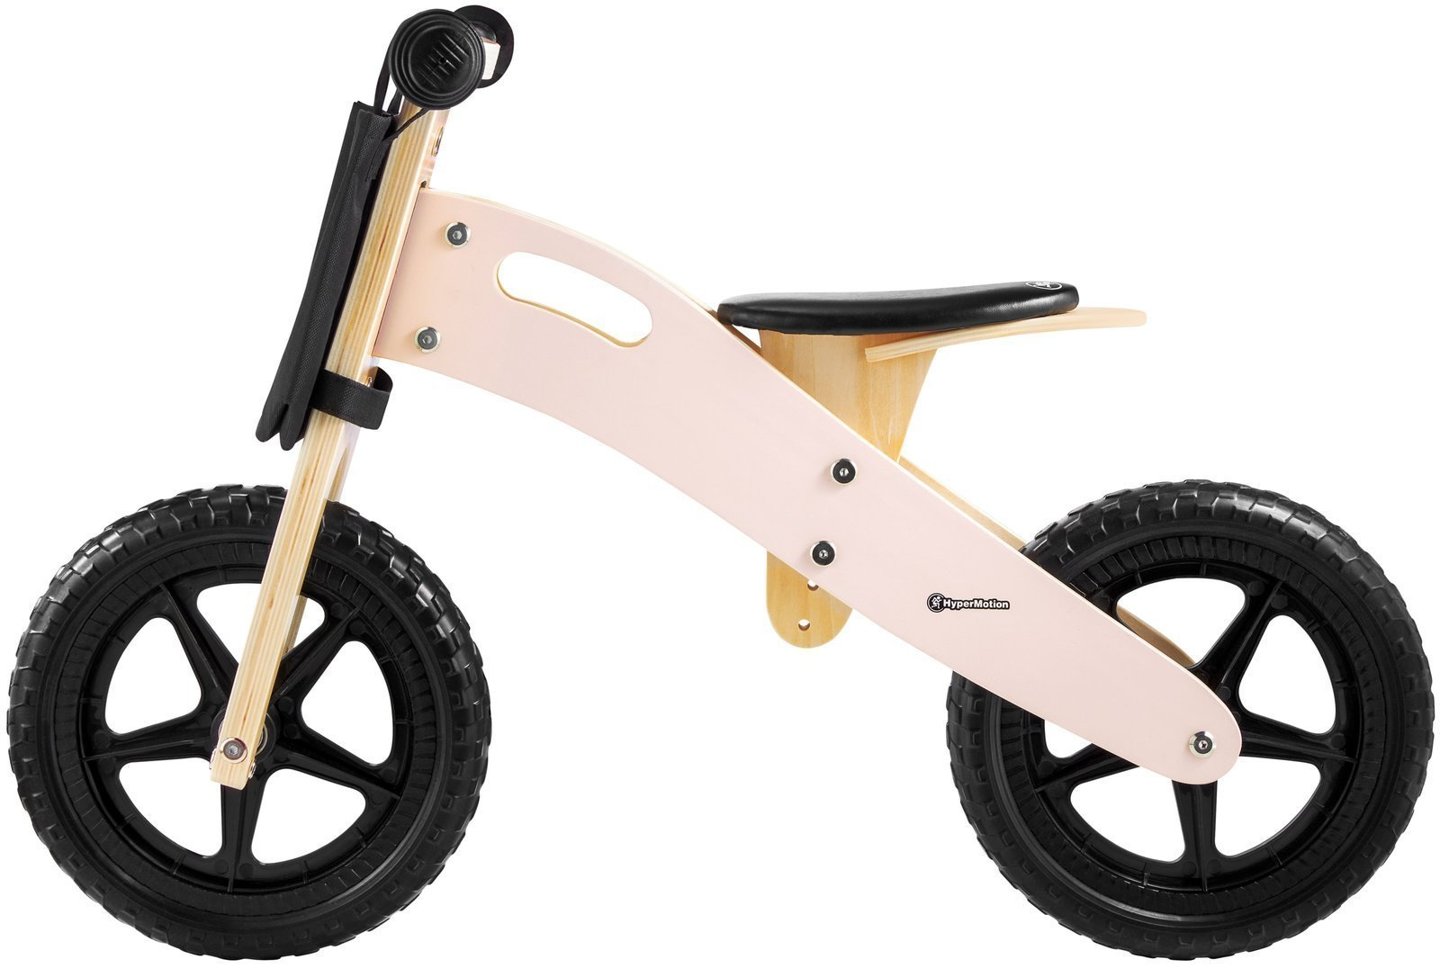 Rowerek biegowy drewniany HyperMotion LEXI - piankowe koła, superlekki - różowy